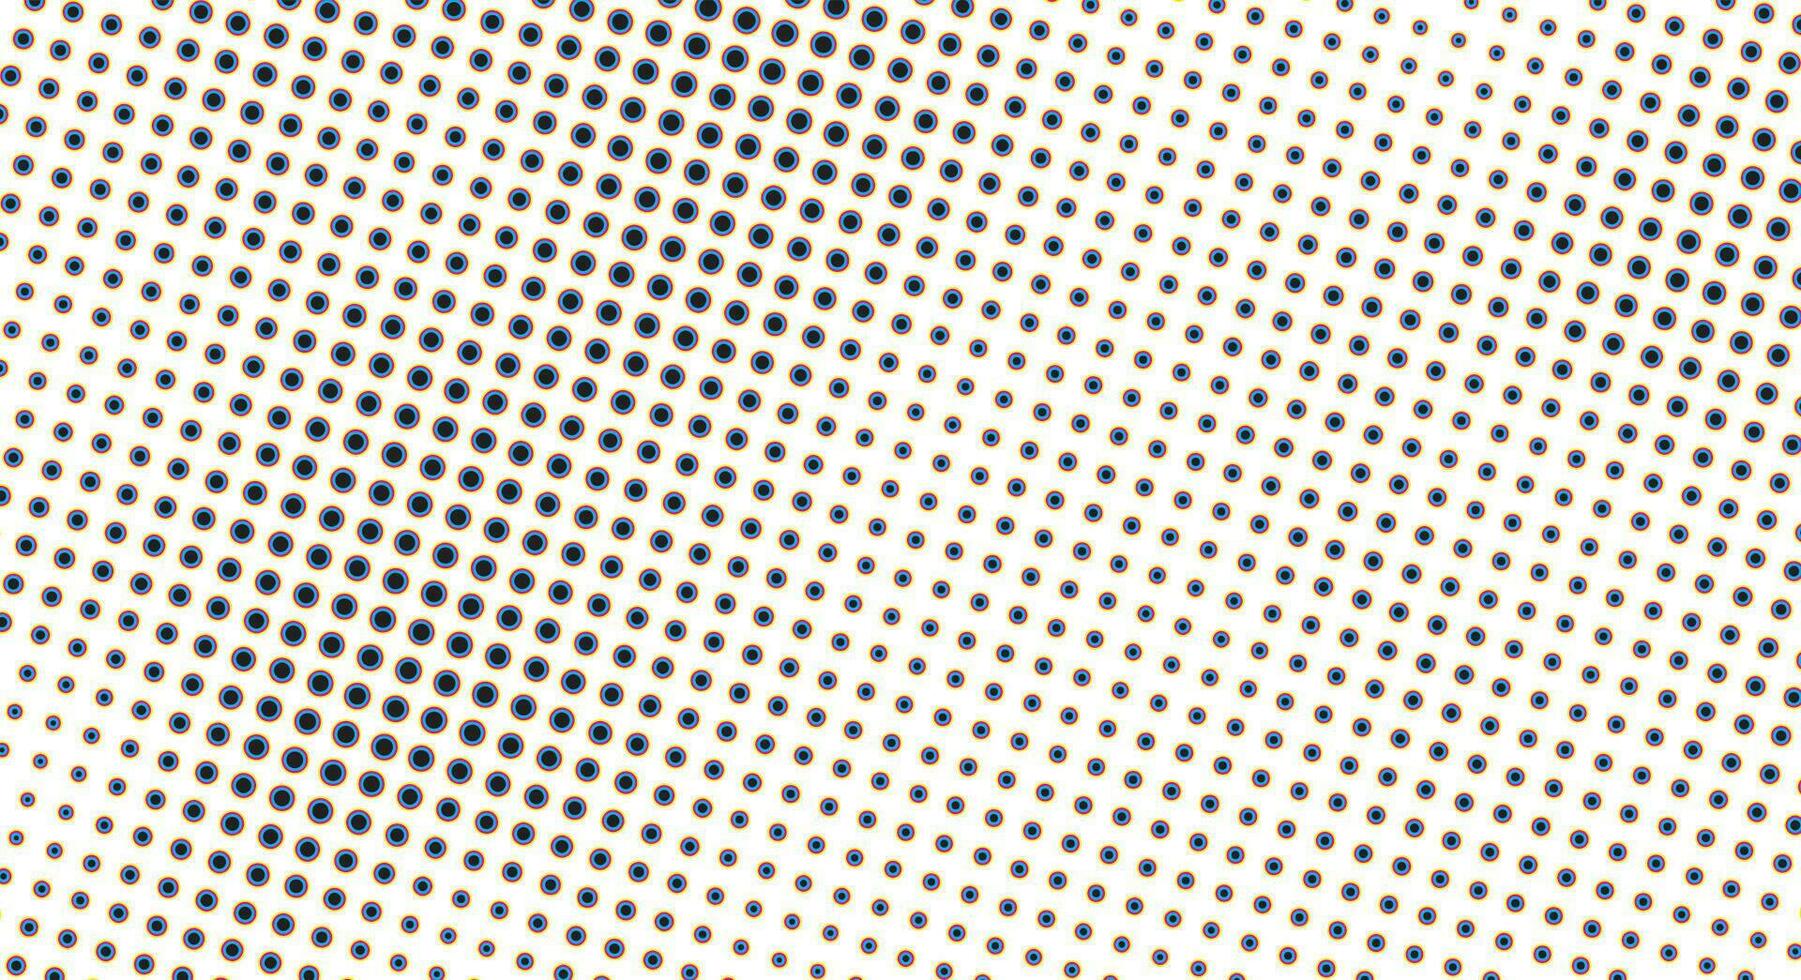 CMYK punto astratto fondale nel bianca e blu toni nel grunge stile, monocromatico sfondo per attività commerciale carta, manifesto, interno disegno, etichetta, sito web, pubblicità vettore